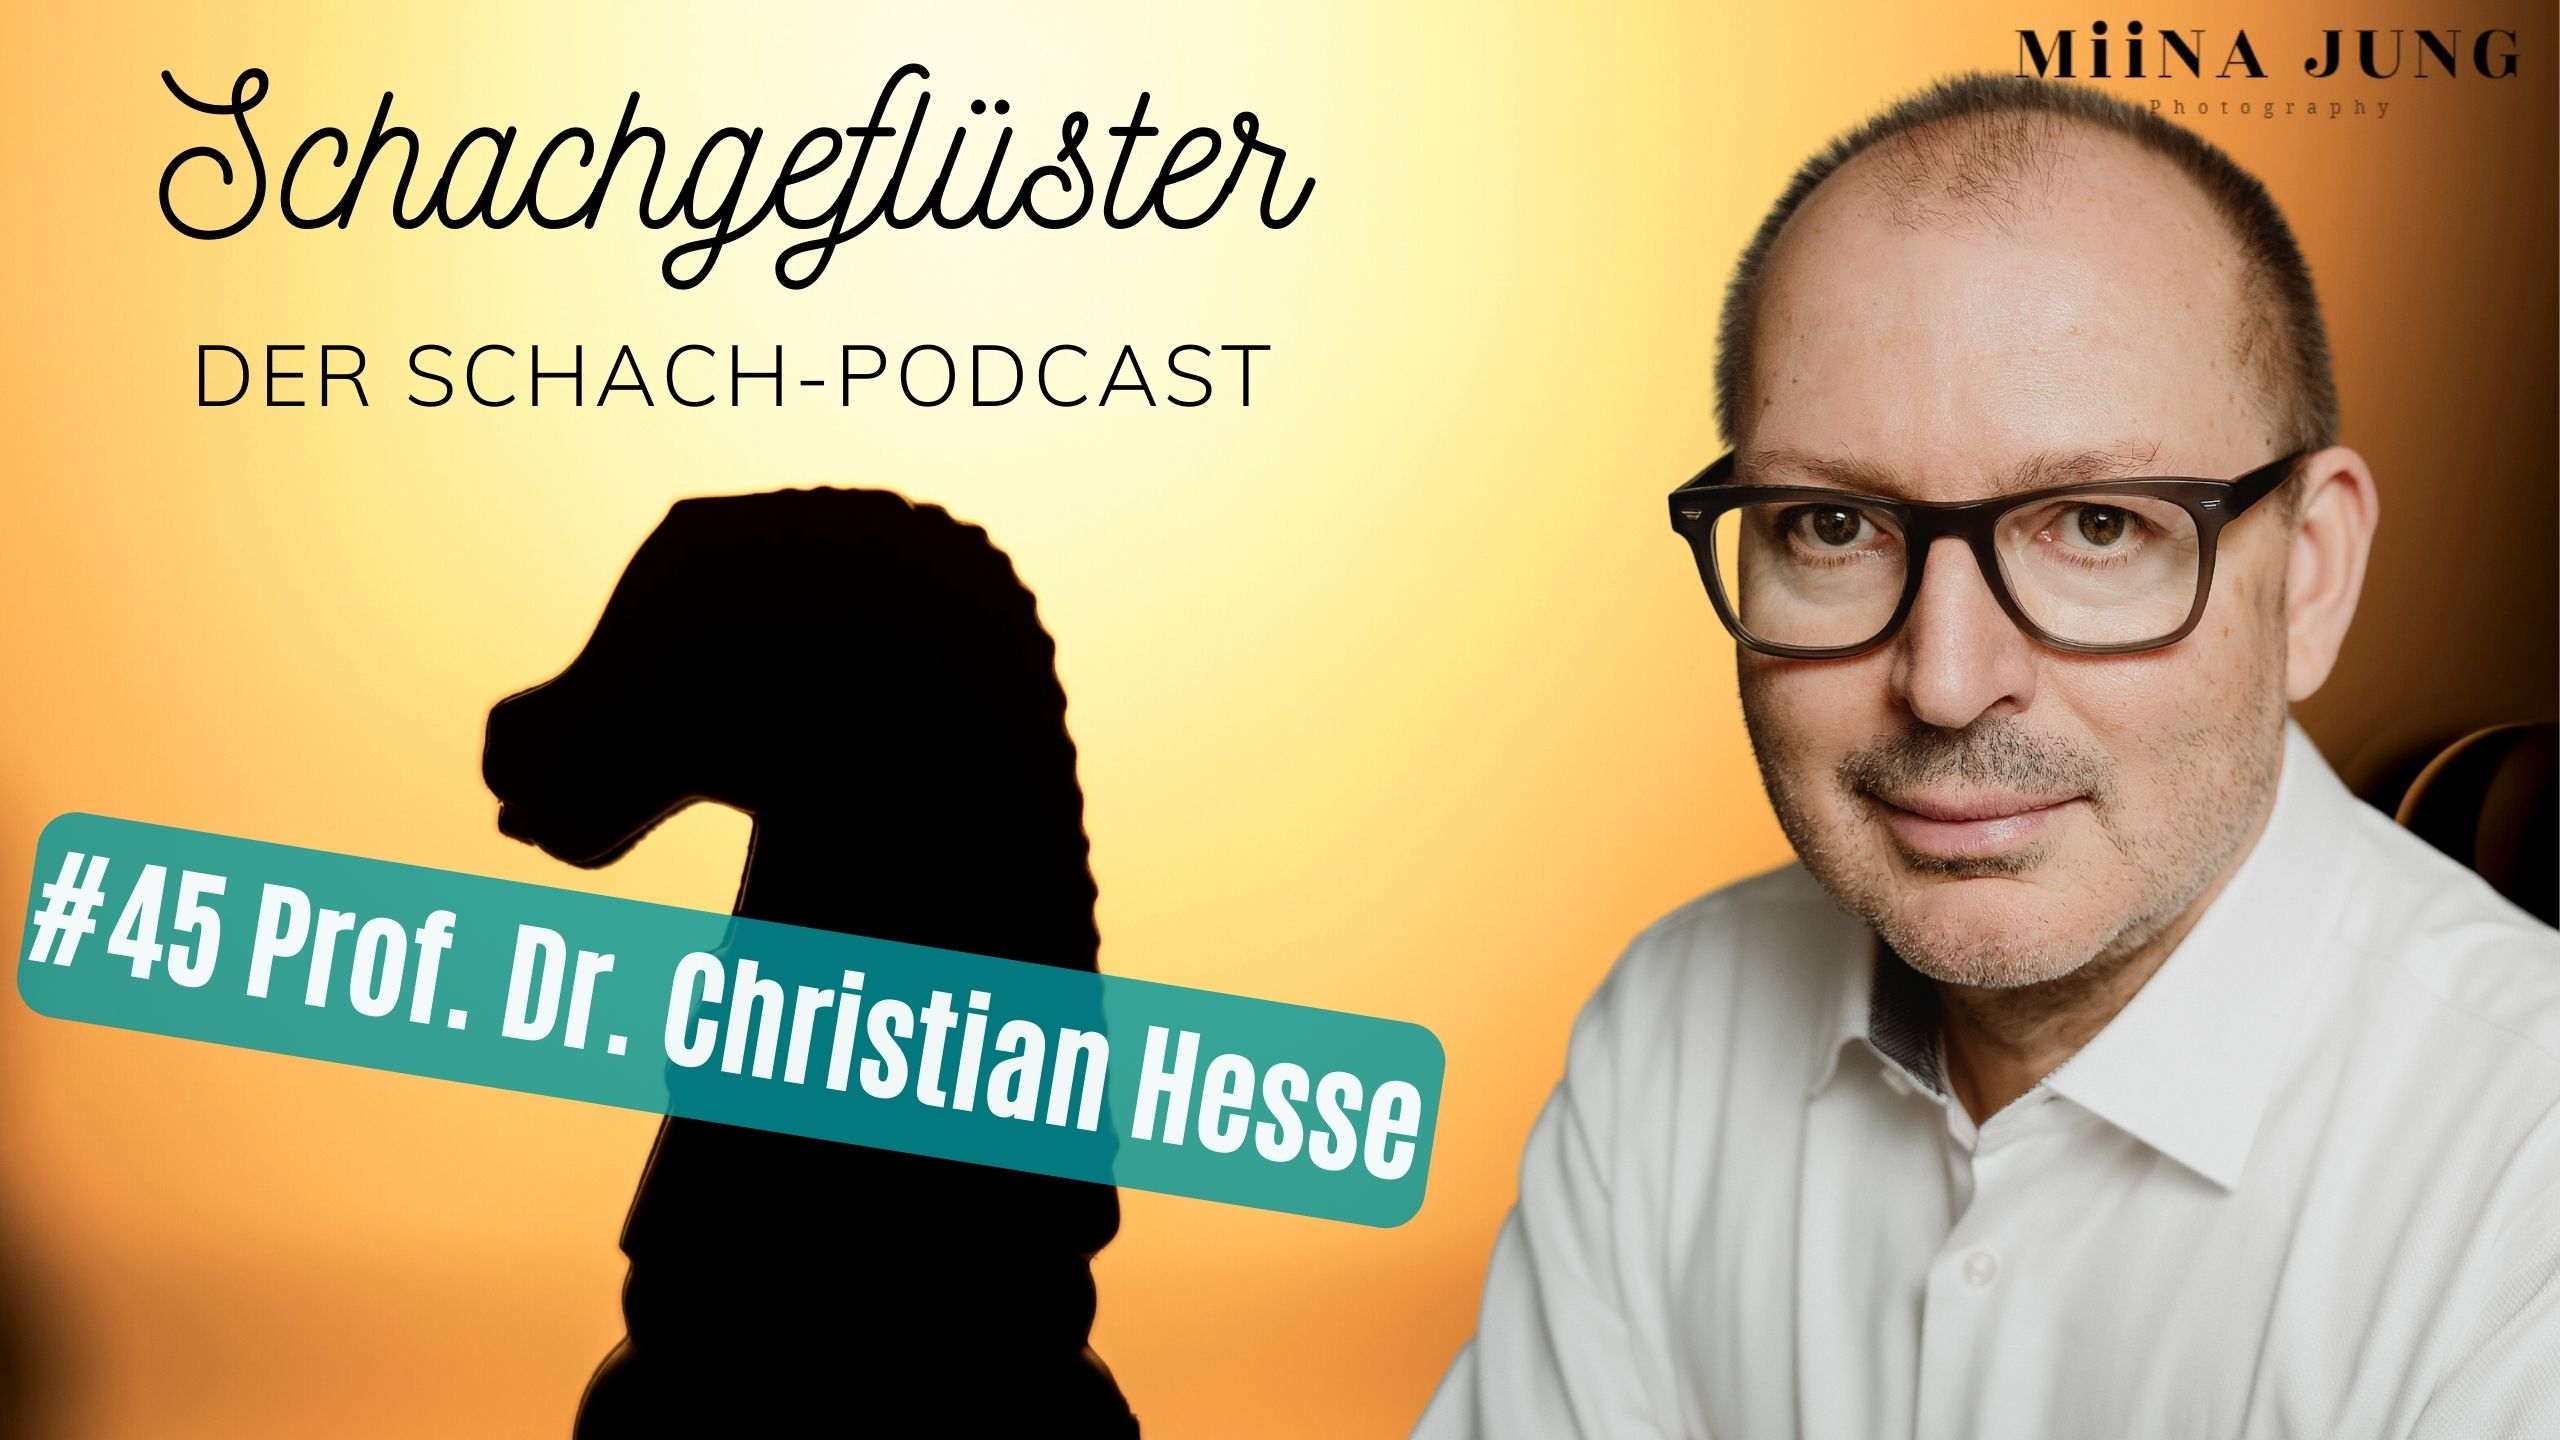 Schach und Mathematik - Prof. Dr. Christian Hesse